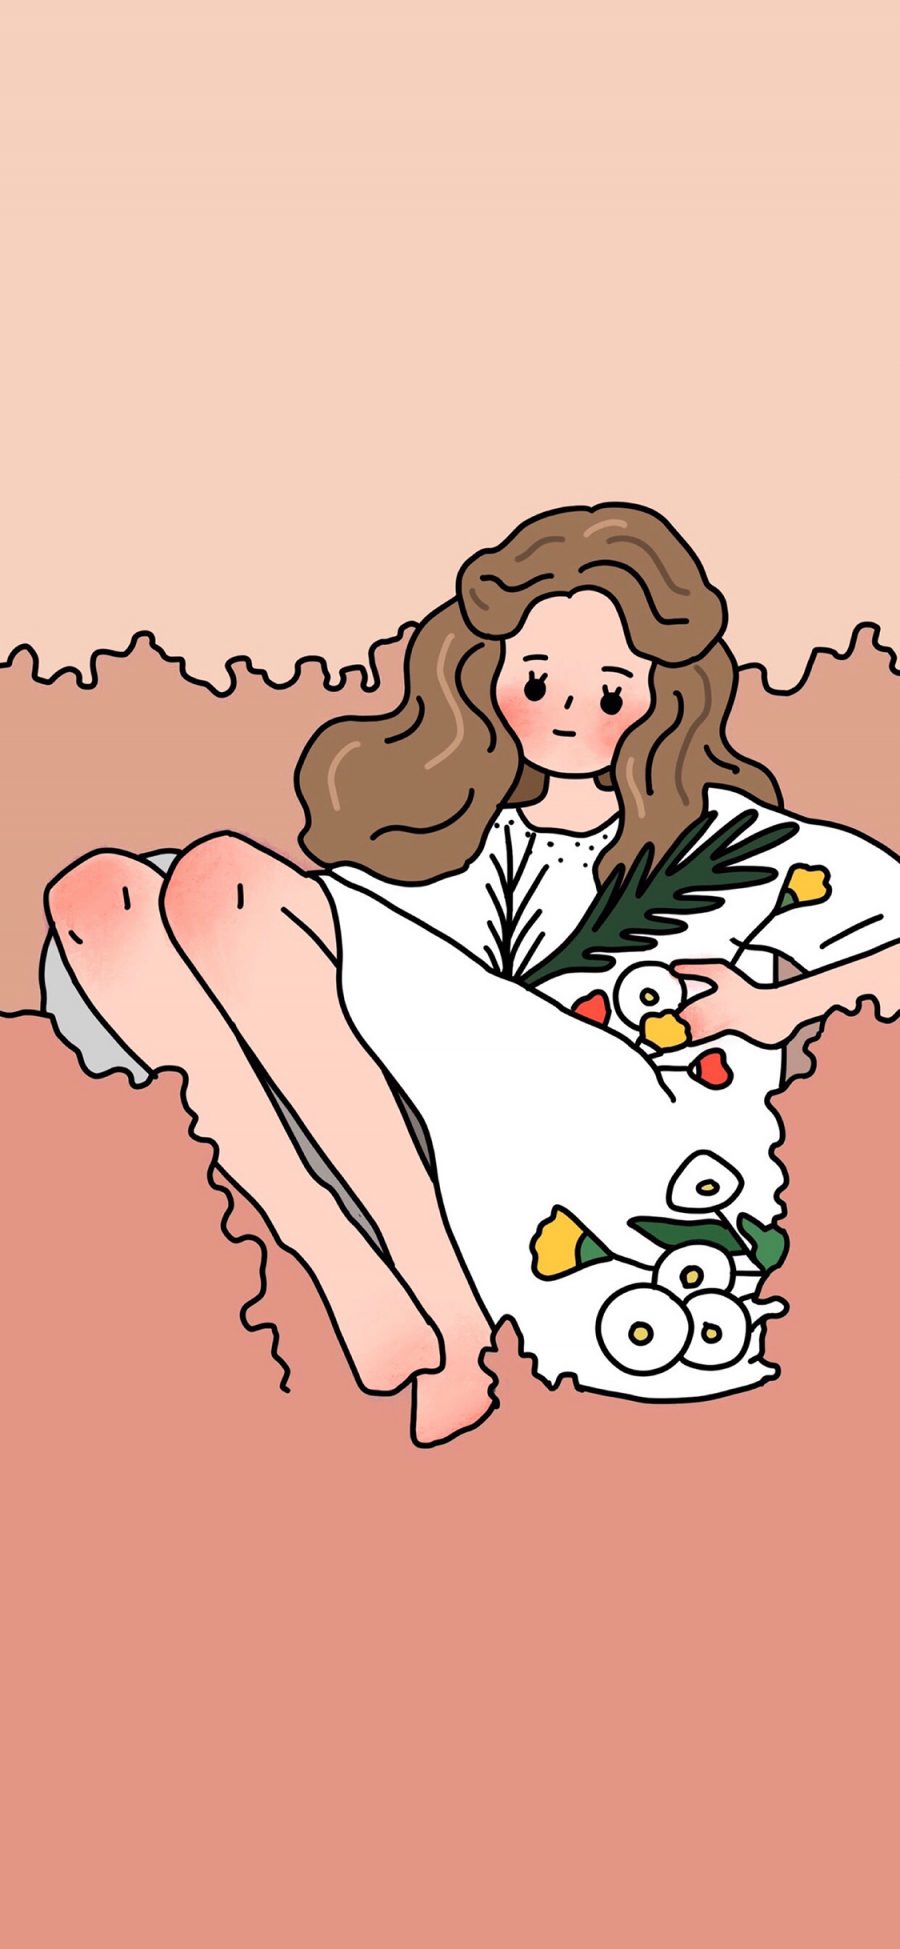 [2436×1125]卡通 女孩 插图 鲜花 韩国插画师 苹果手机动漫壁纸图片